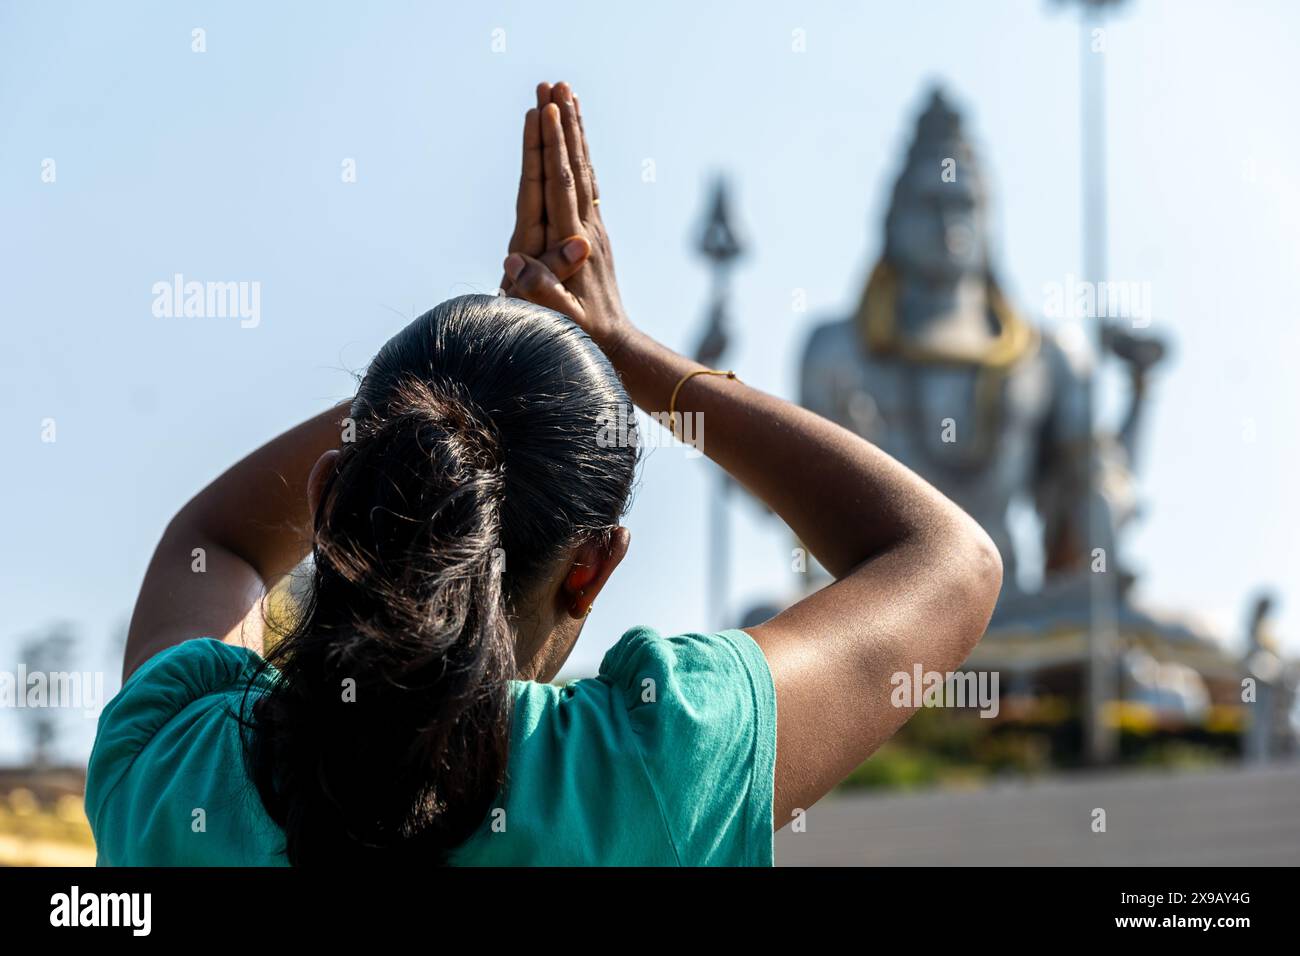 Une personne dans le traditionnel Anjali Mudra prie devant une majestueuse statue de divinité hindoue dans un temple serein. L'échafaudage de construction fait allusion à la rénovation en cours Banque D'Images